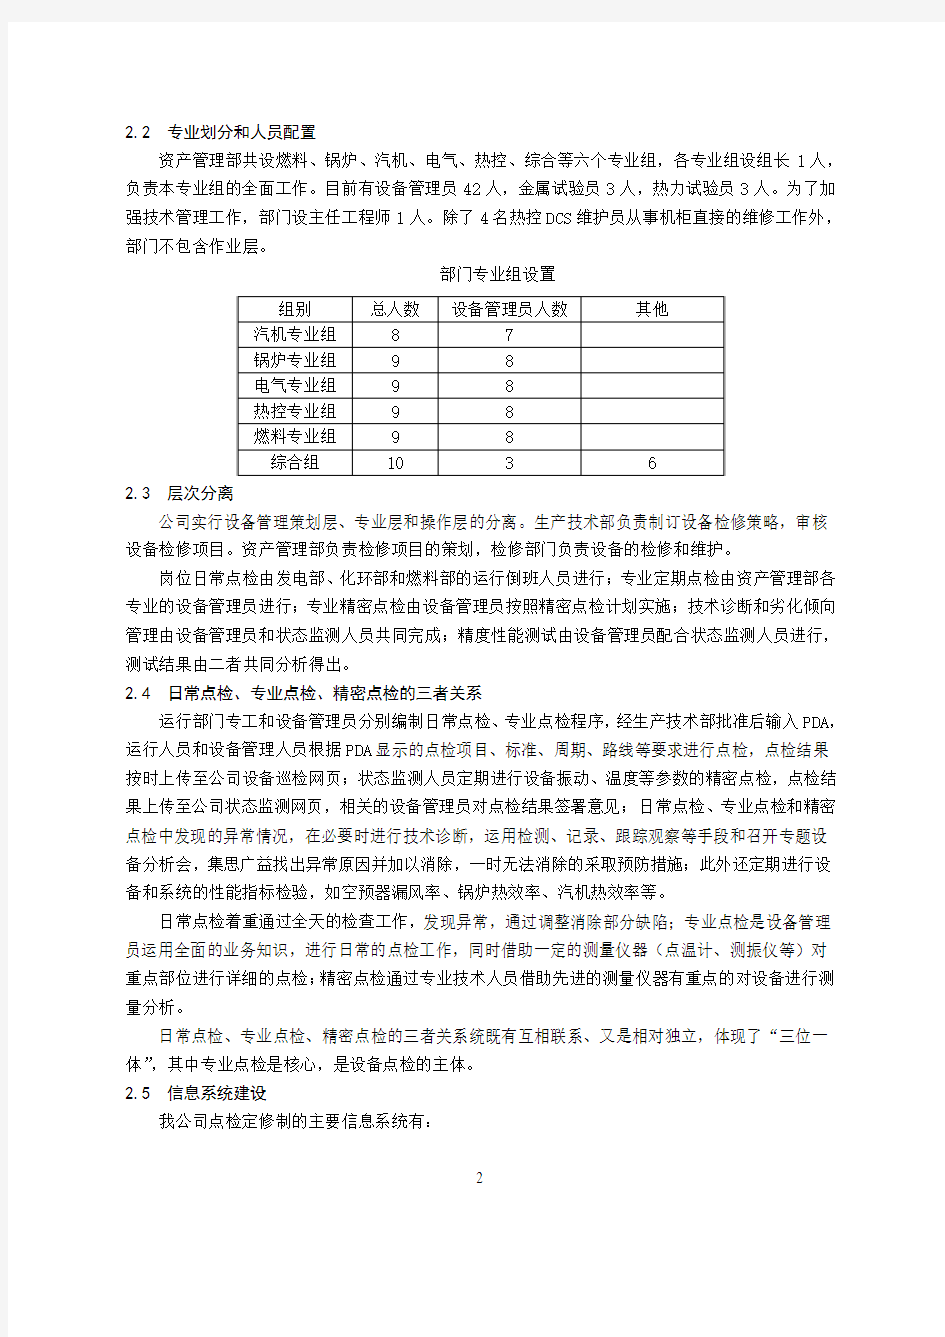 附4江苏利港电力有限公司设备点检定修制实施情况介绍